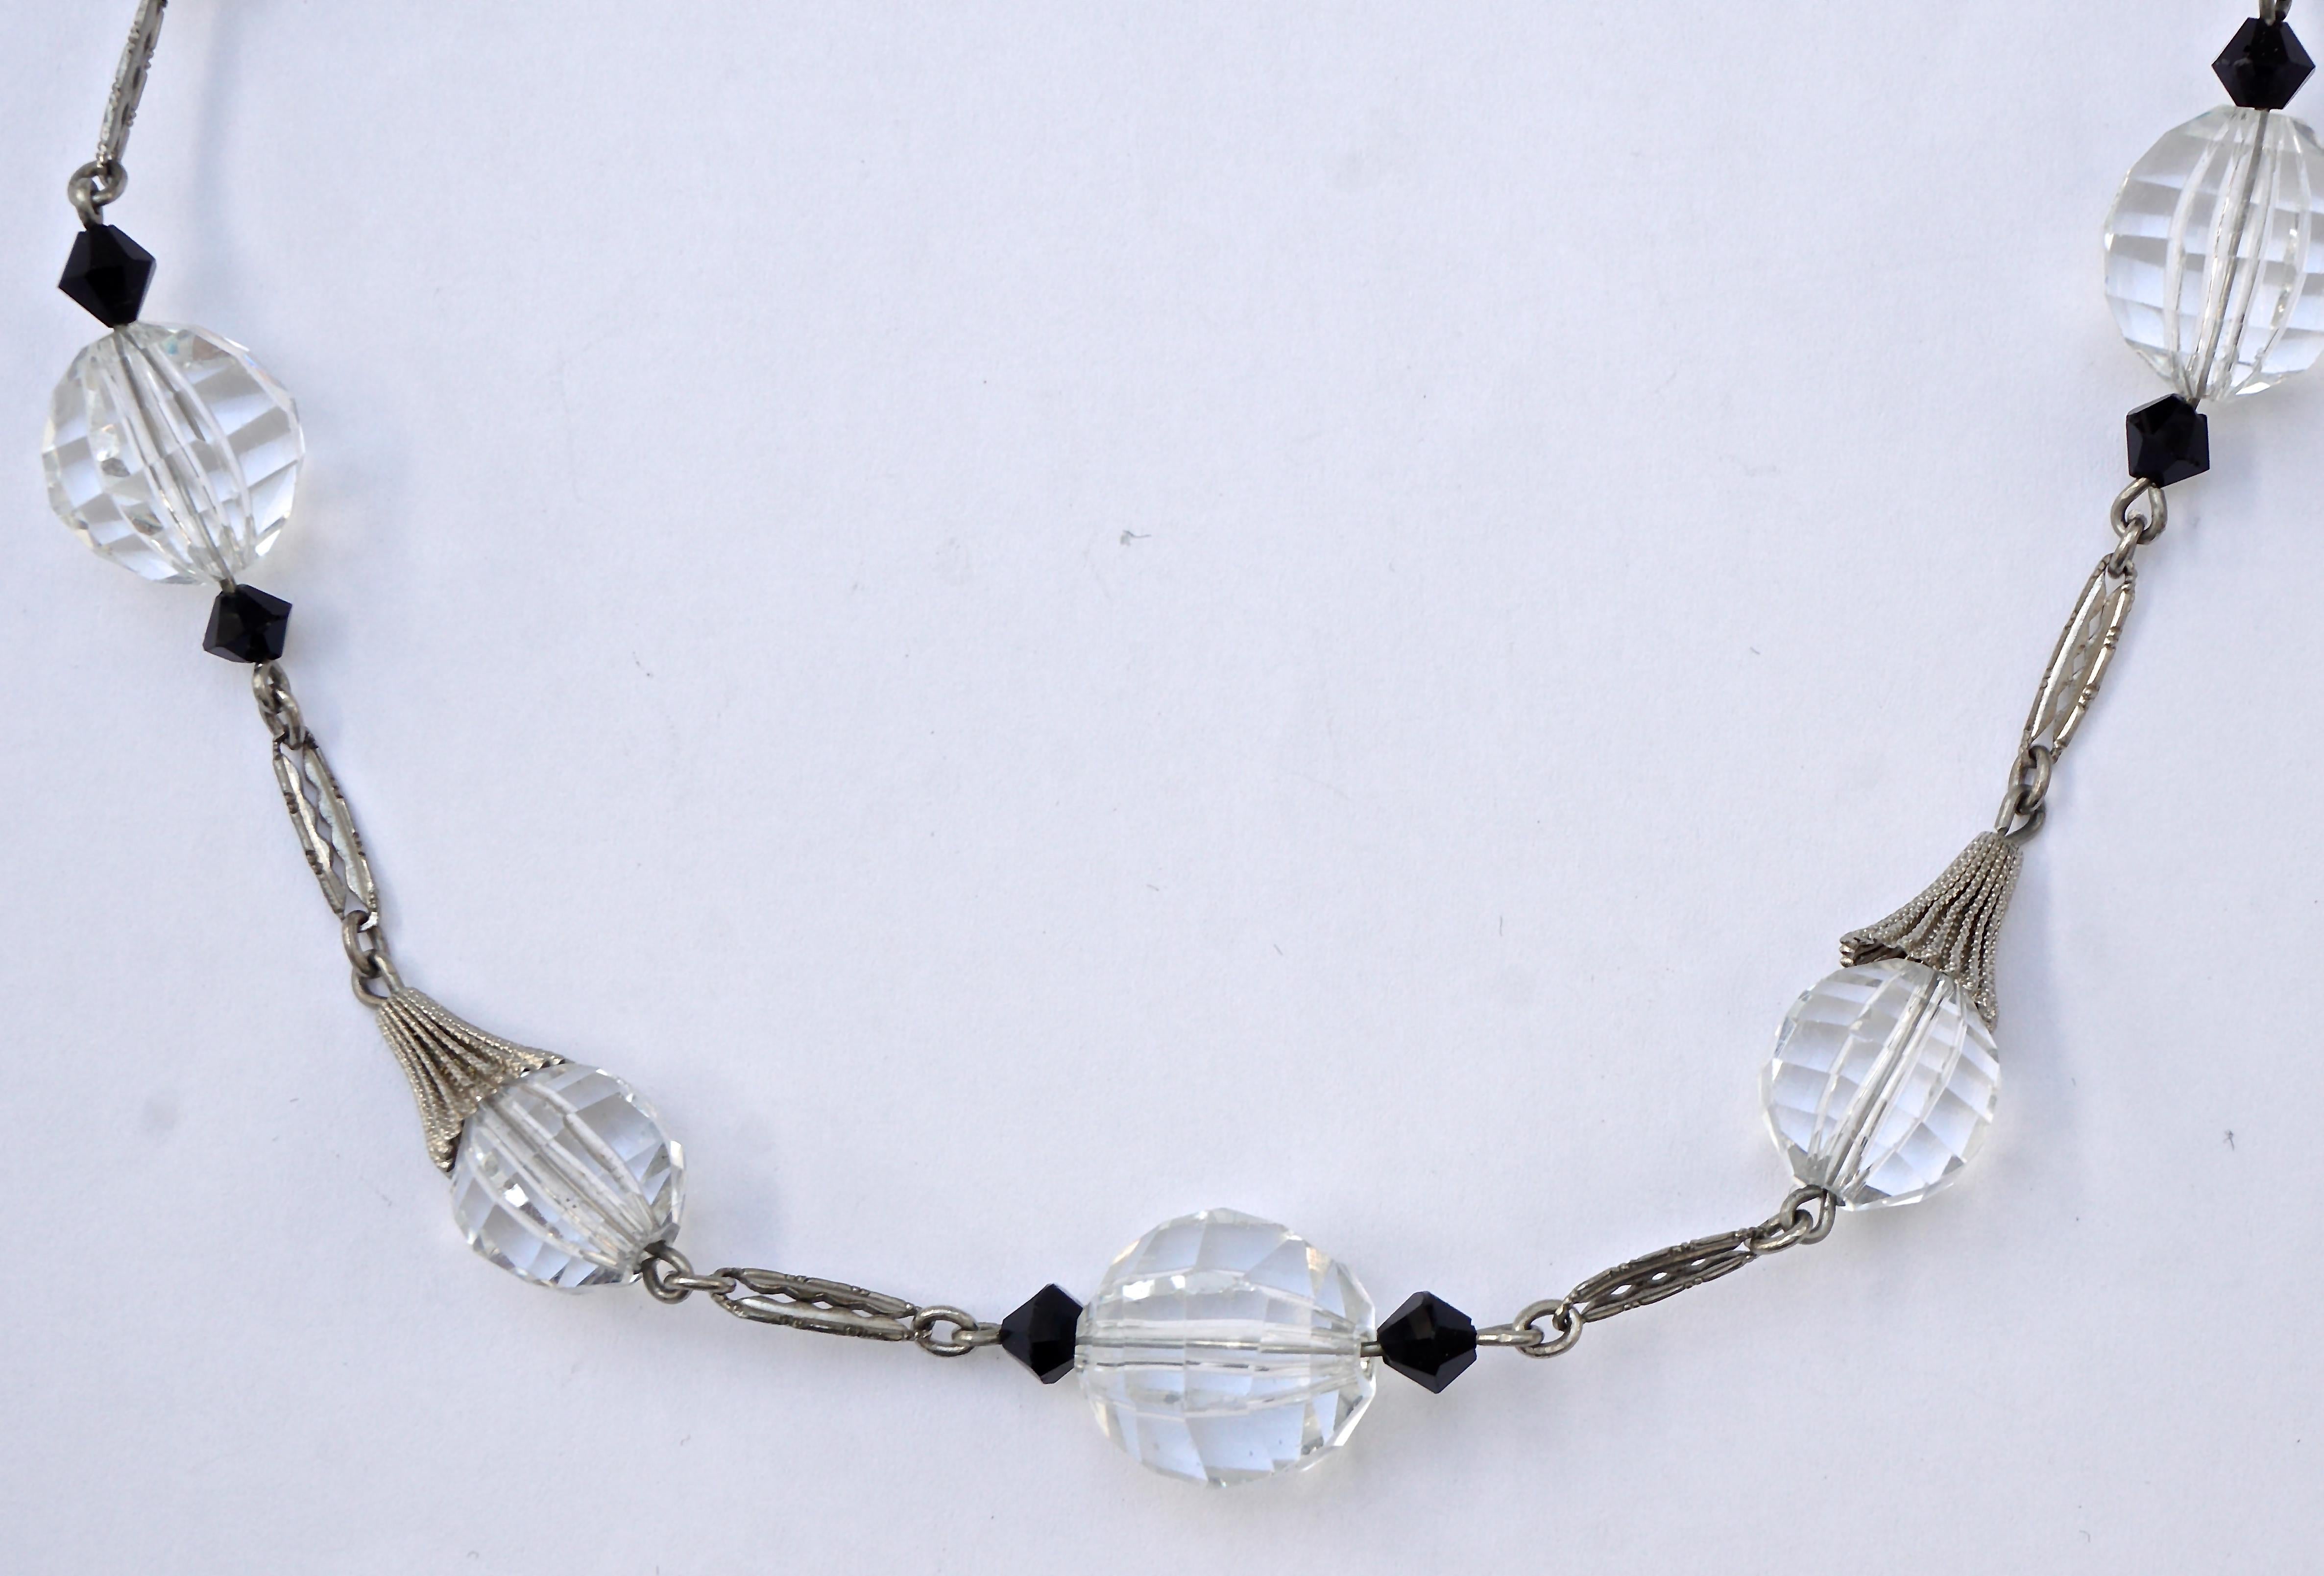 
Wunderschöne Art-Déco-Halskette mit schwarzen und klaren facettierten Glasperlen und einem Barrel-Verschluss, ca. 1930er Jahre, Länge 43,8 cm. Die silberfarbenen Metallglieder haben ein typisches Art-Déco-Design. Der mittlere klare Glasstein hat